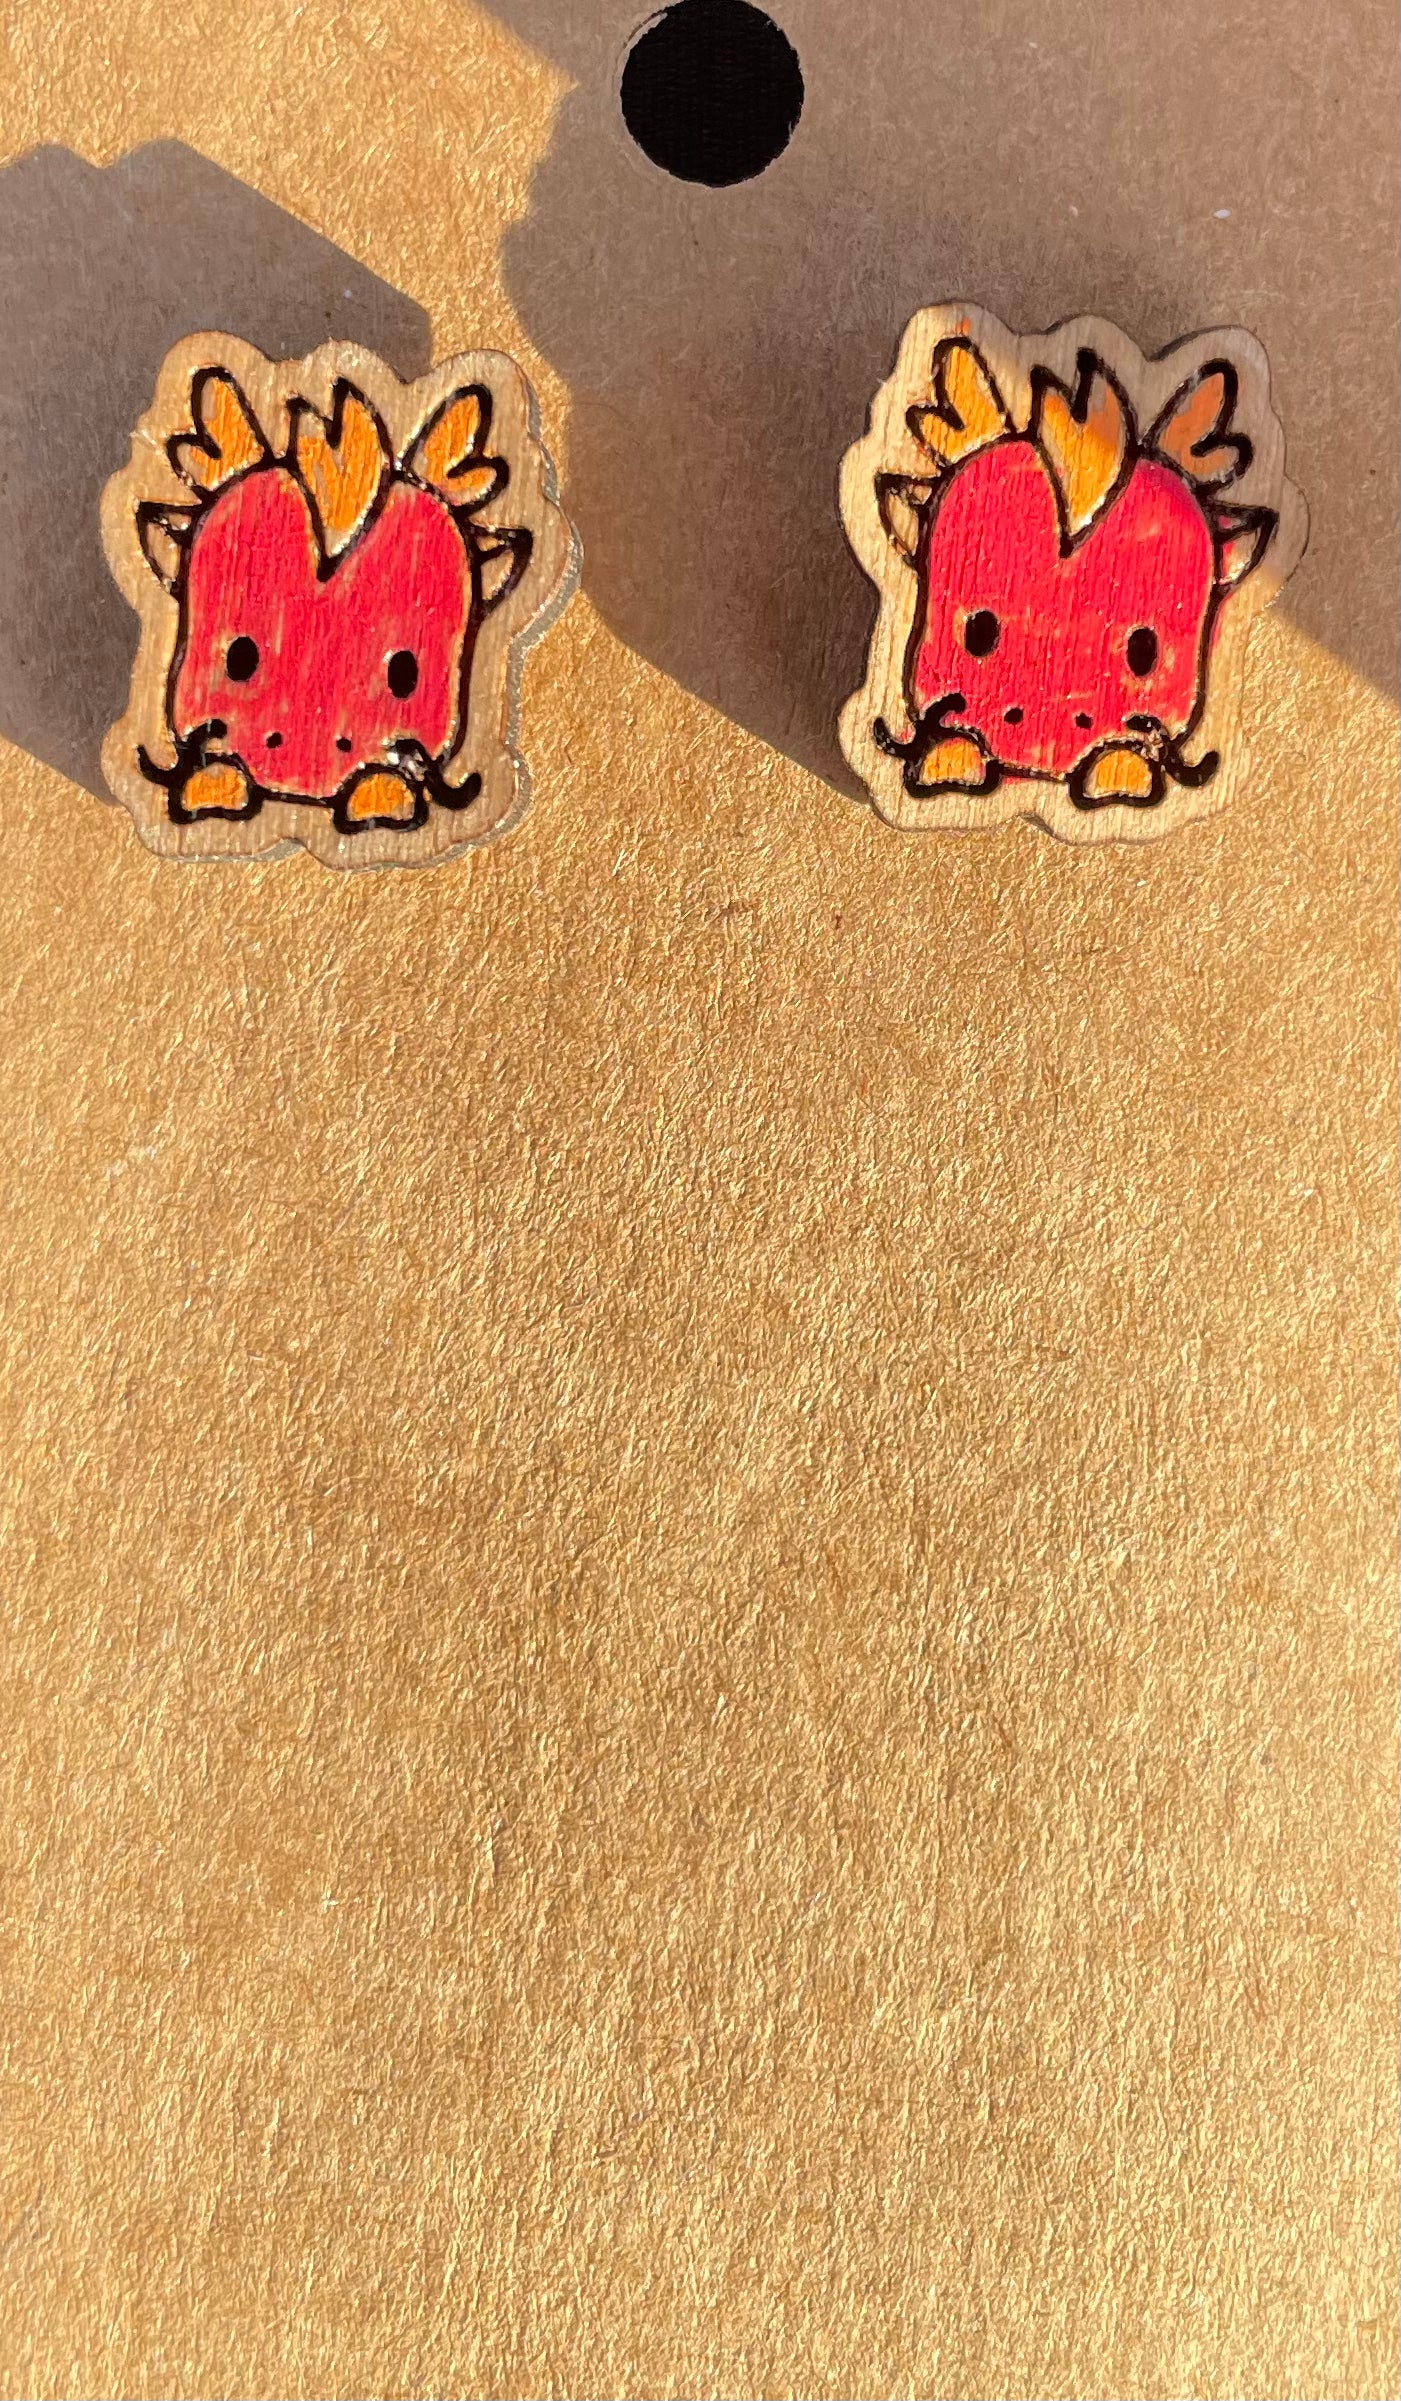 Red Dragon Stud Earrings